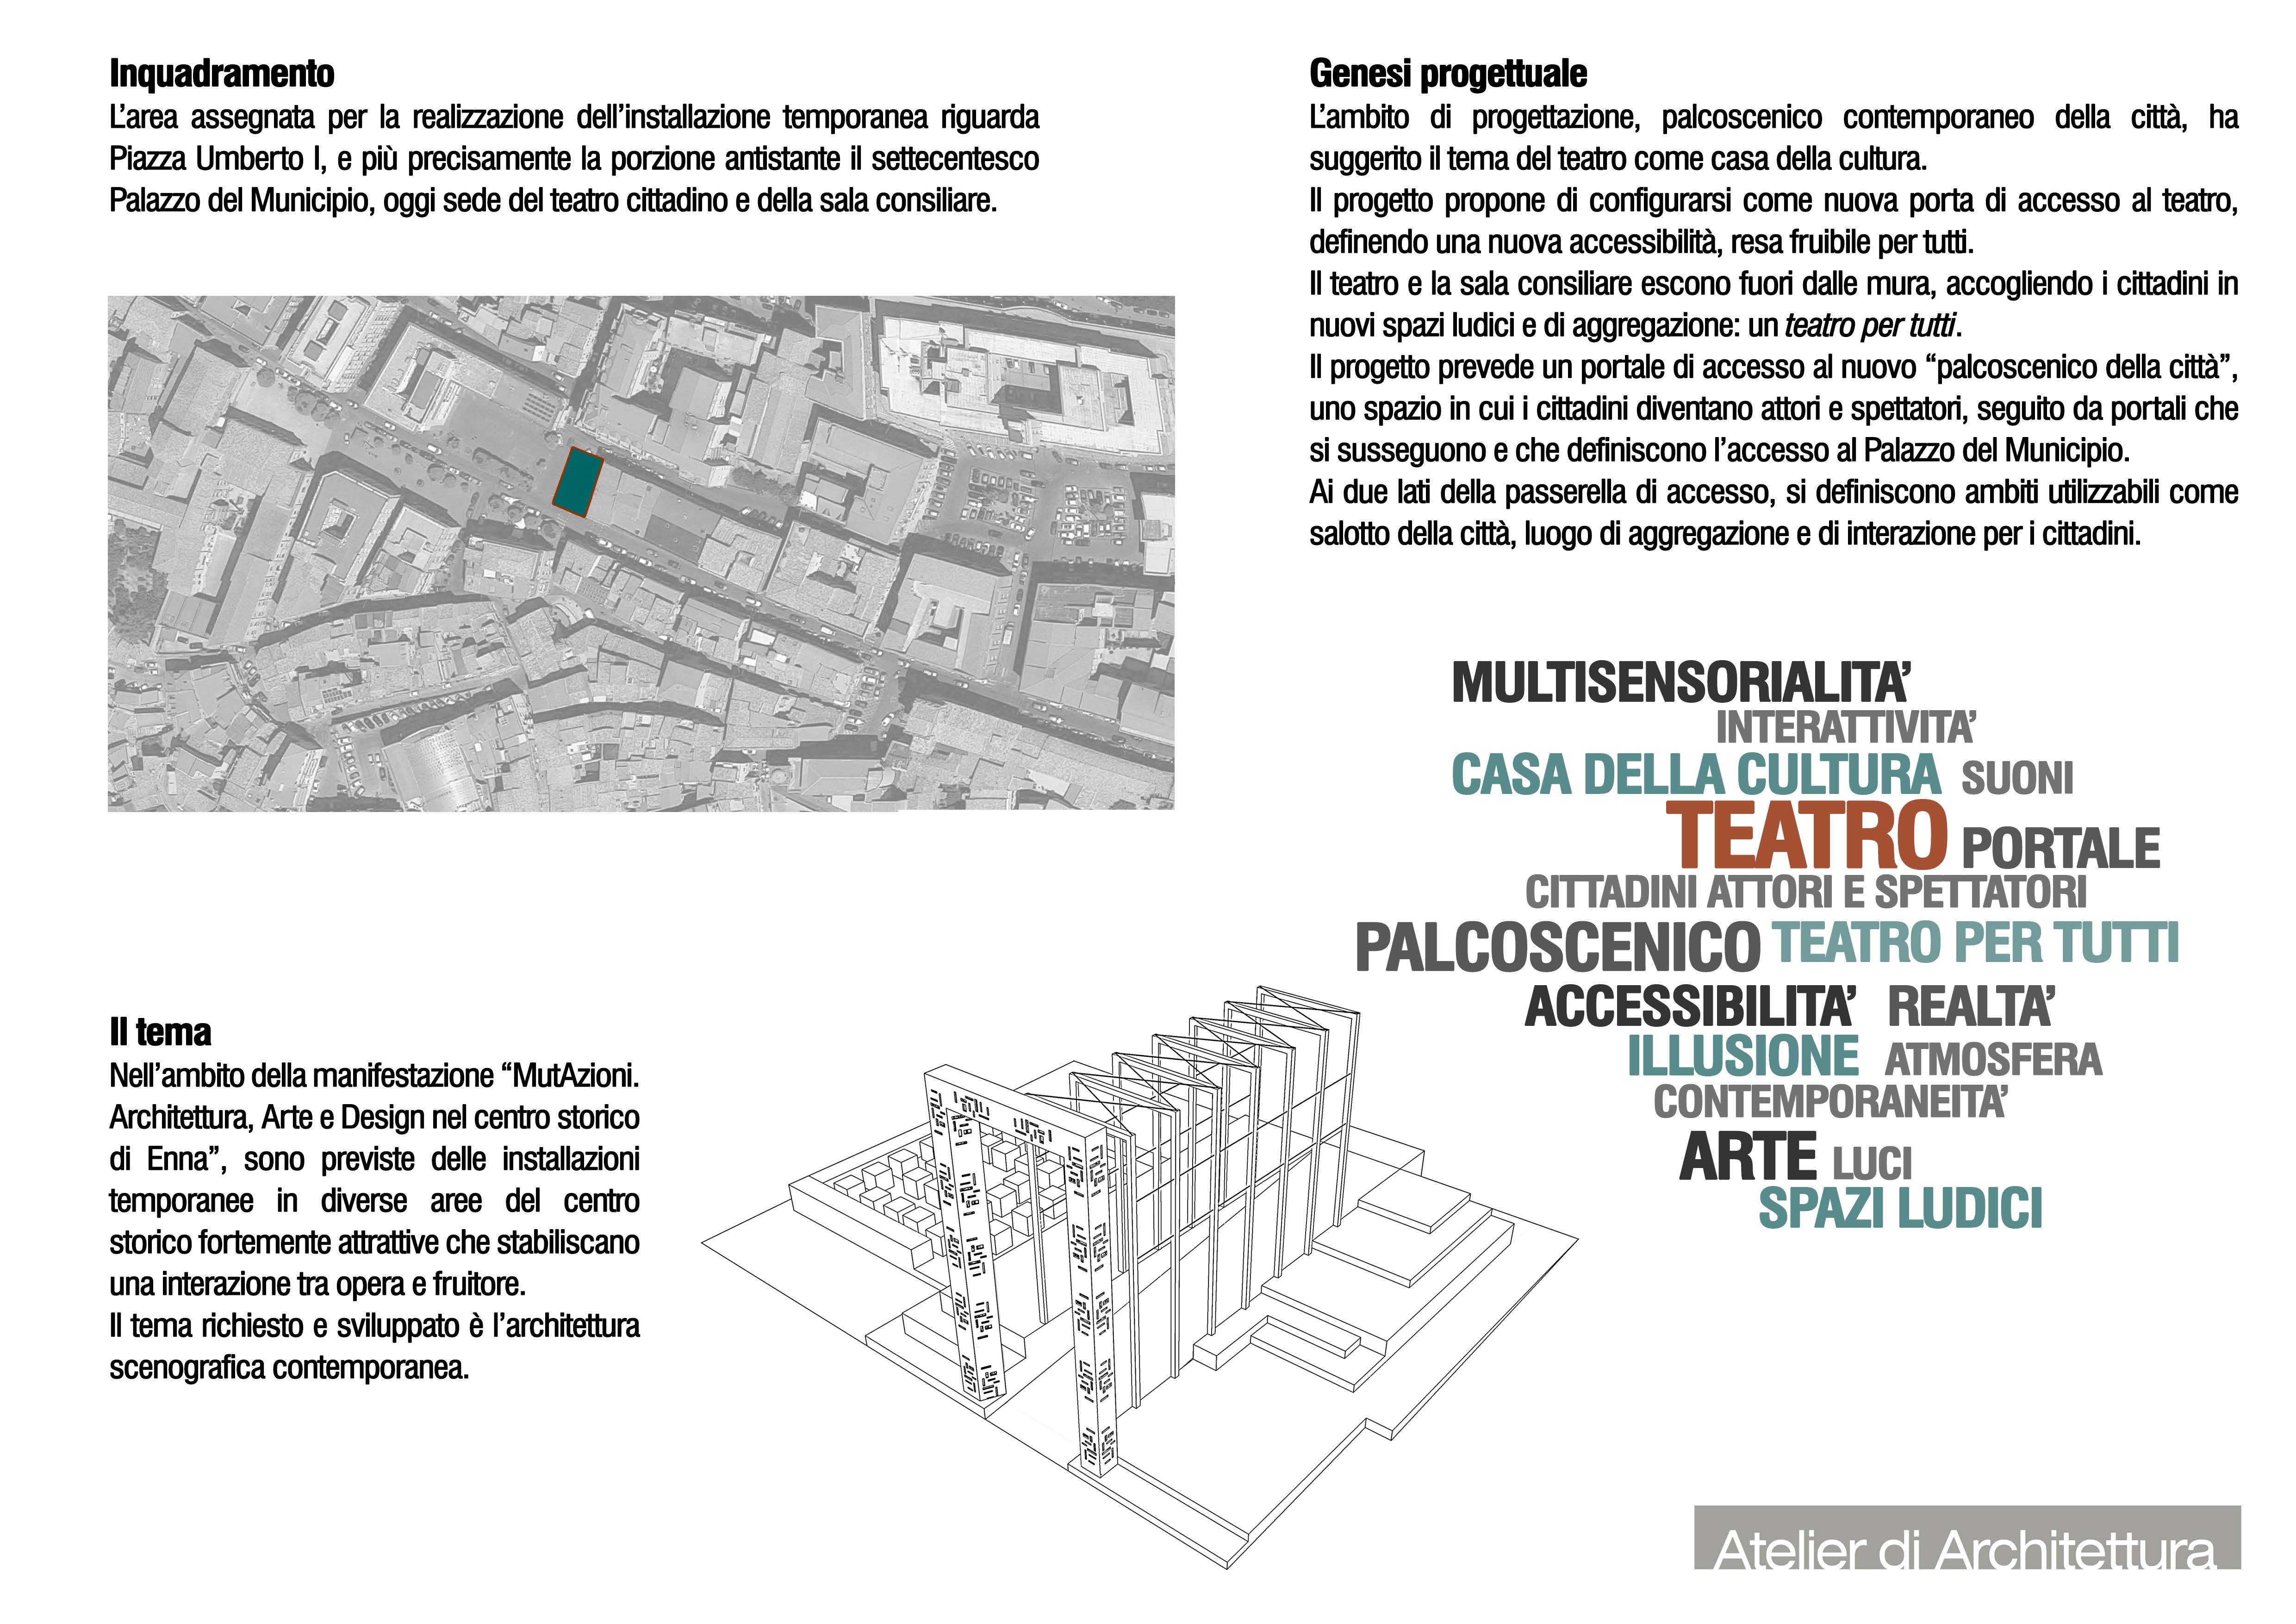 Sebastiano Fazzi Atelier di Architettura - #clusterONE | una porta per tutti